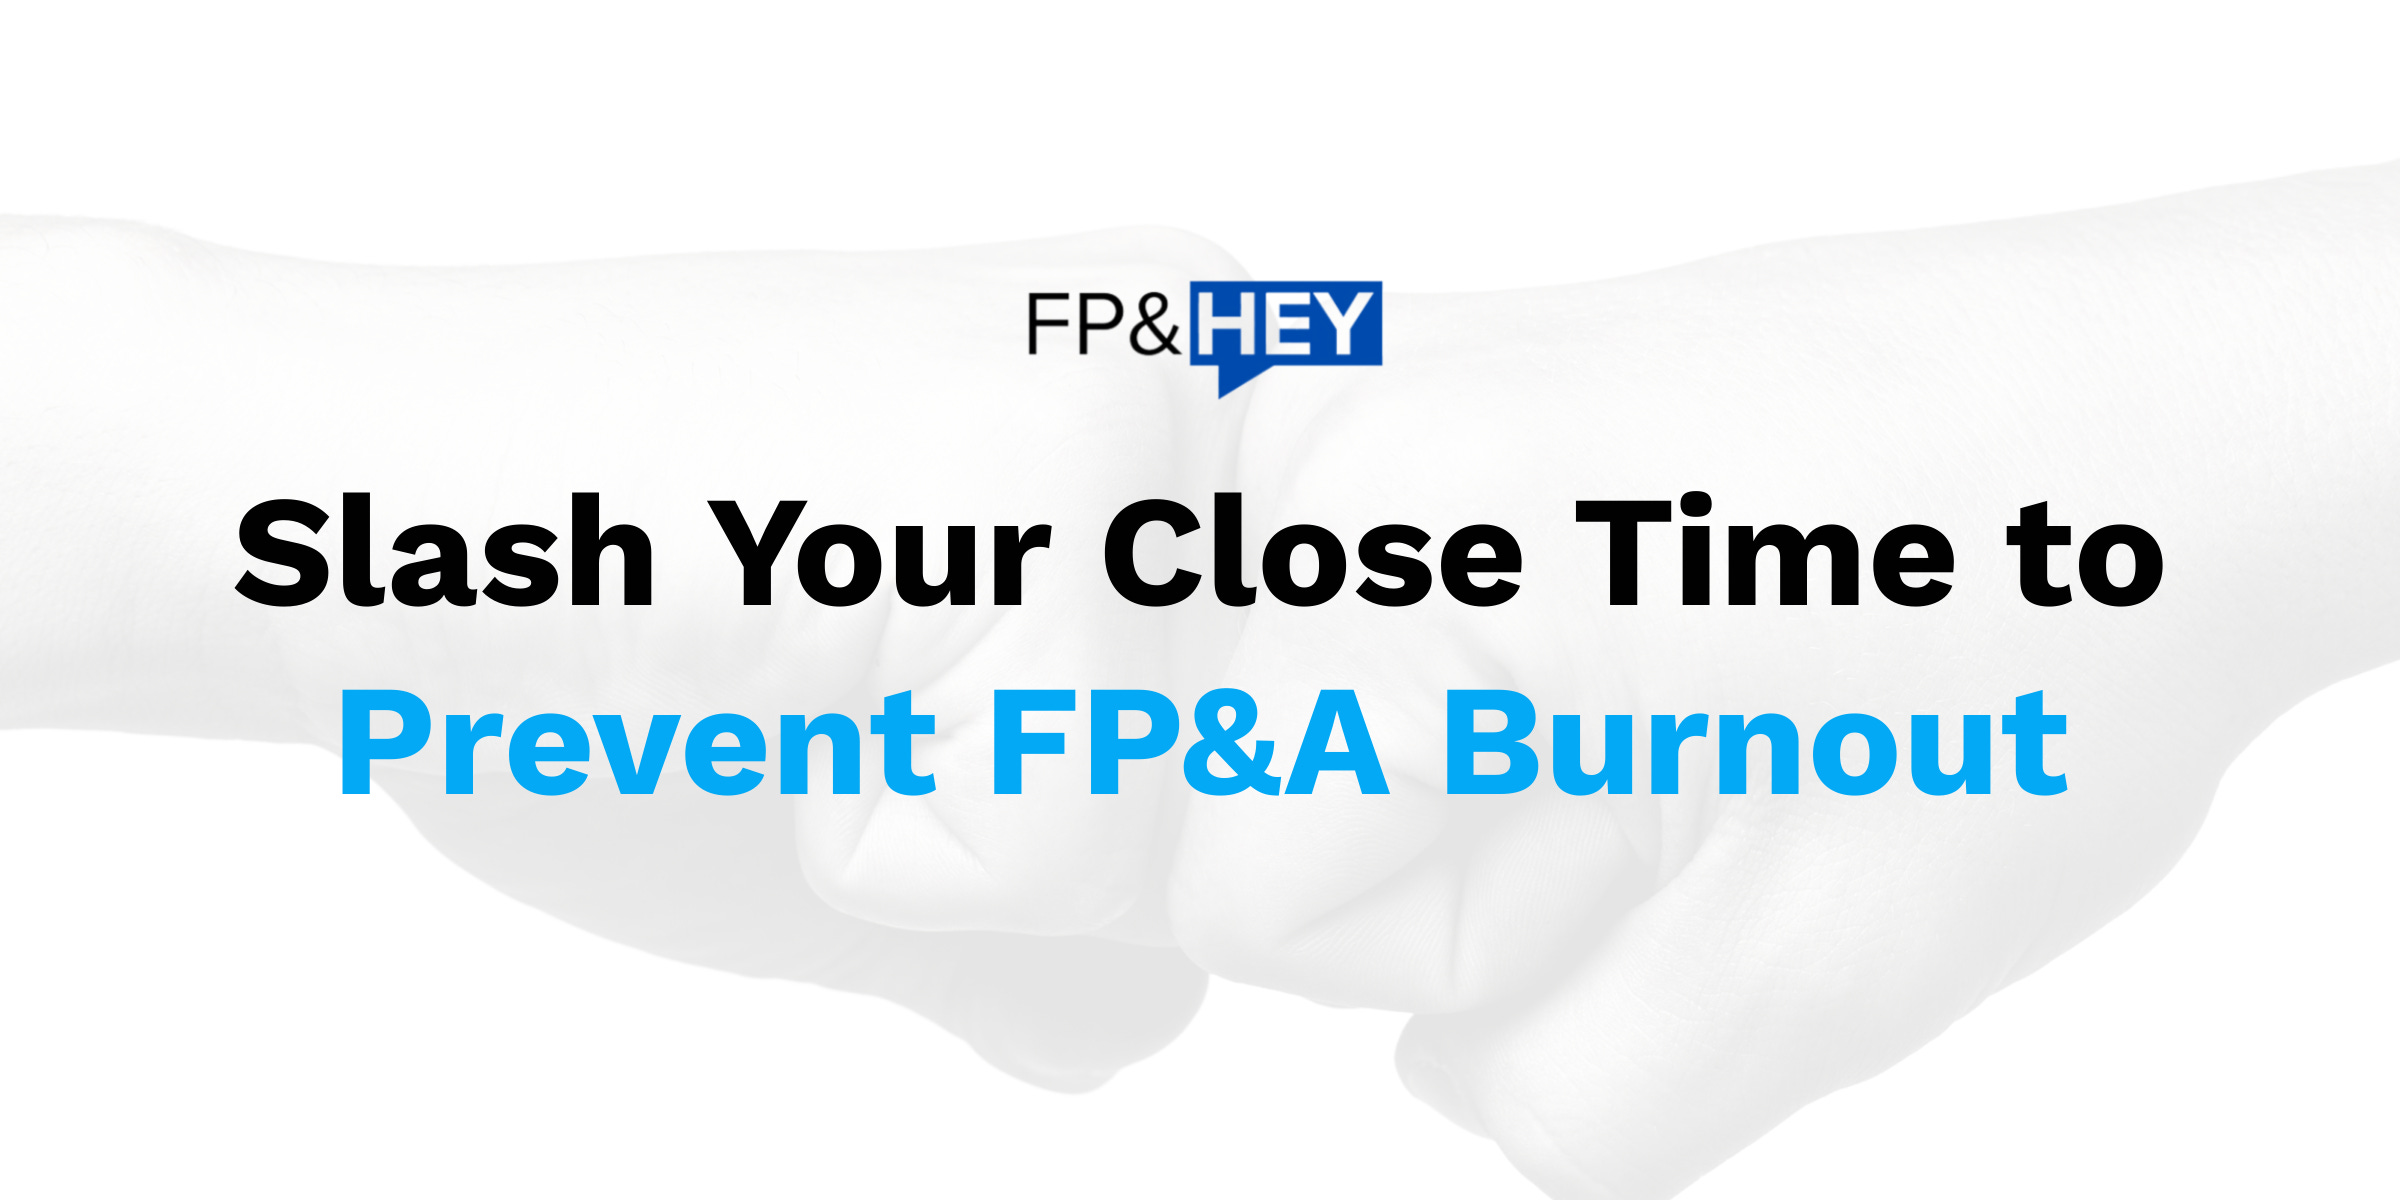 Slash Your Close Time to Prevent FP&A Burnout